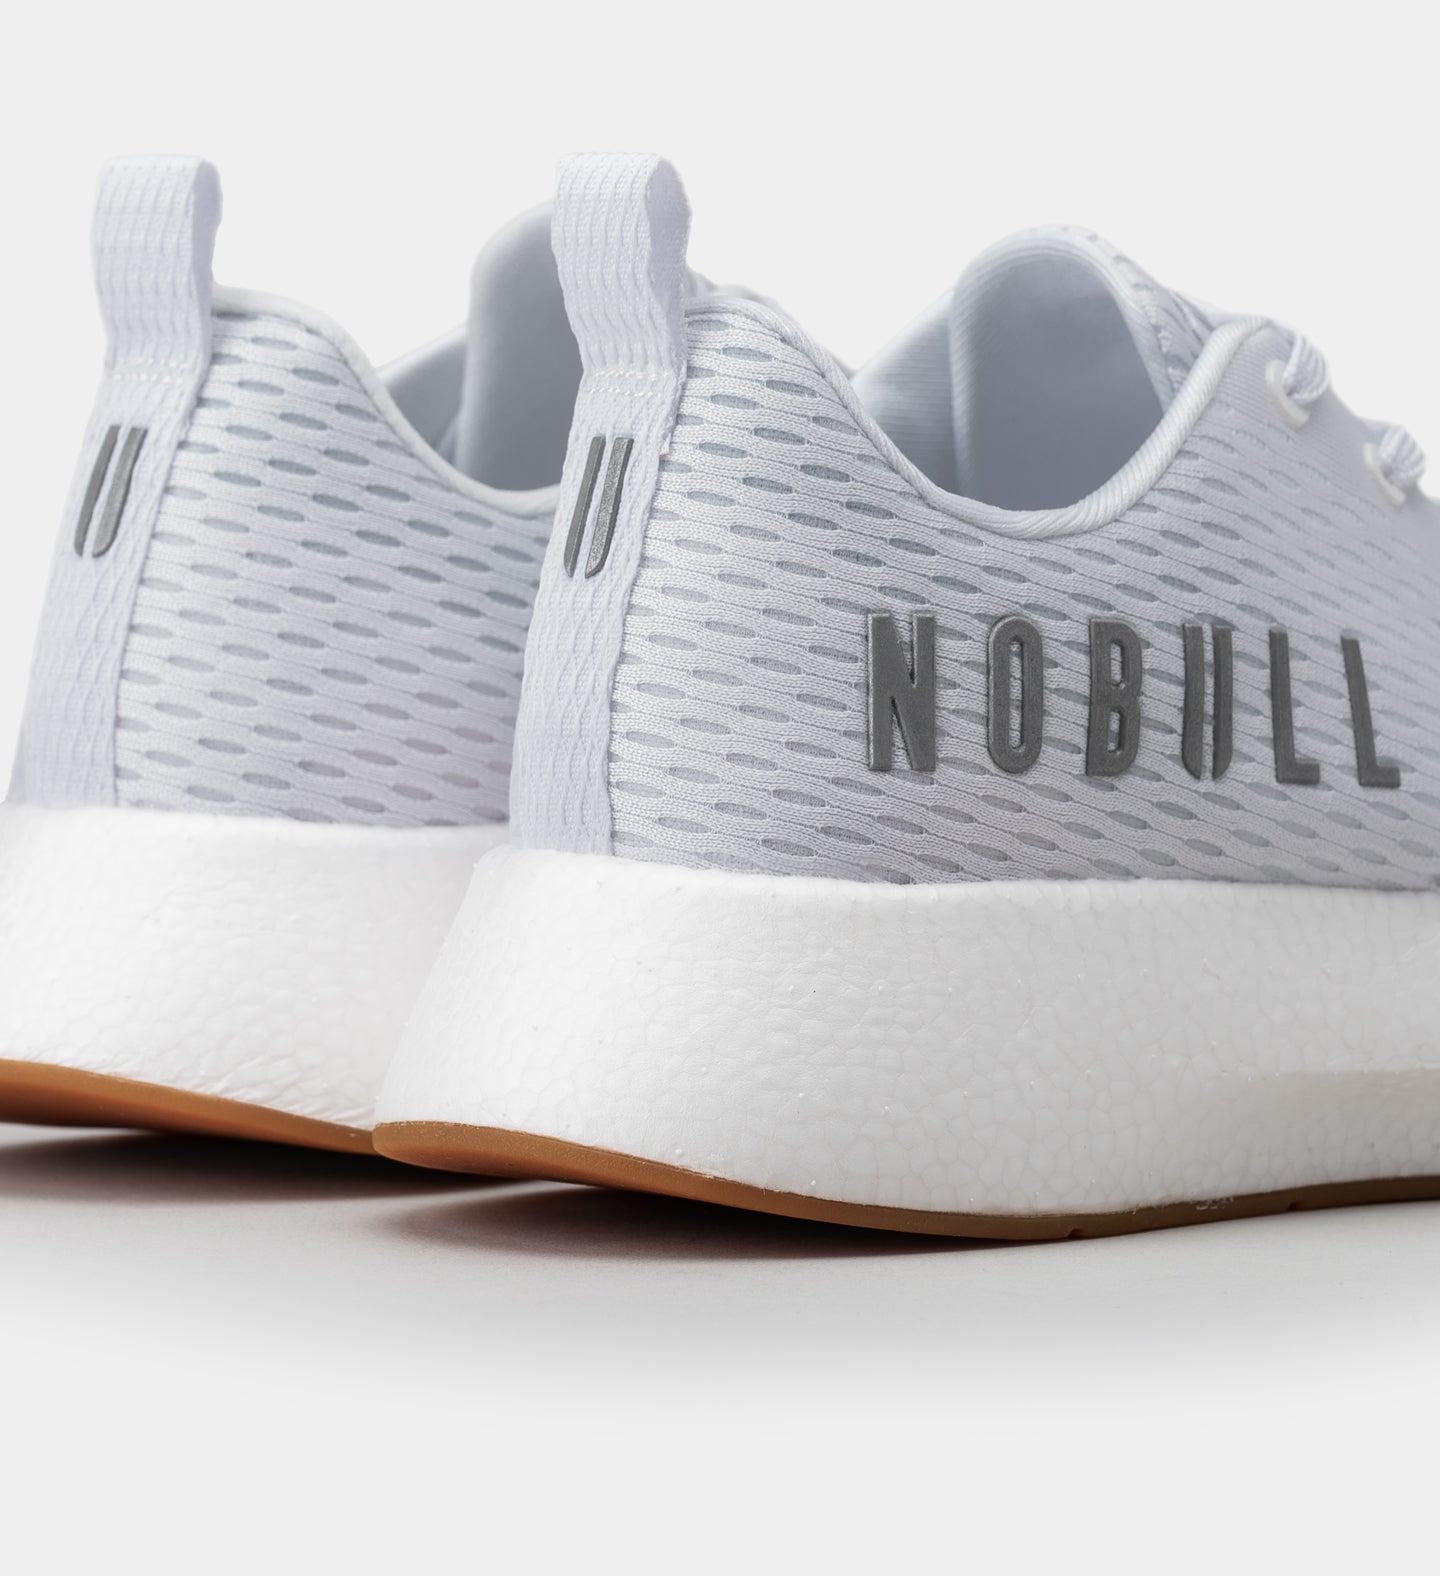 Nobull - Men's Mesh Runner - White - Size 9.5